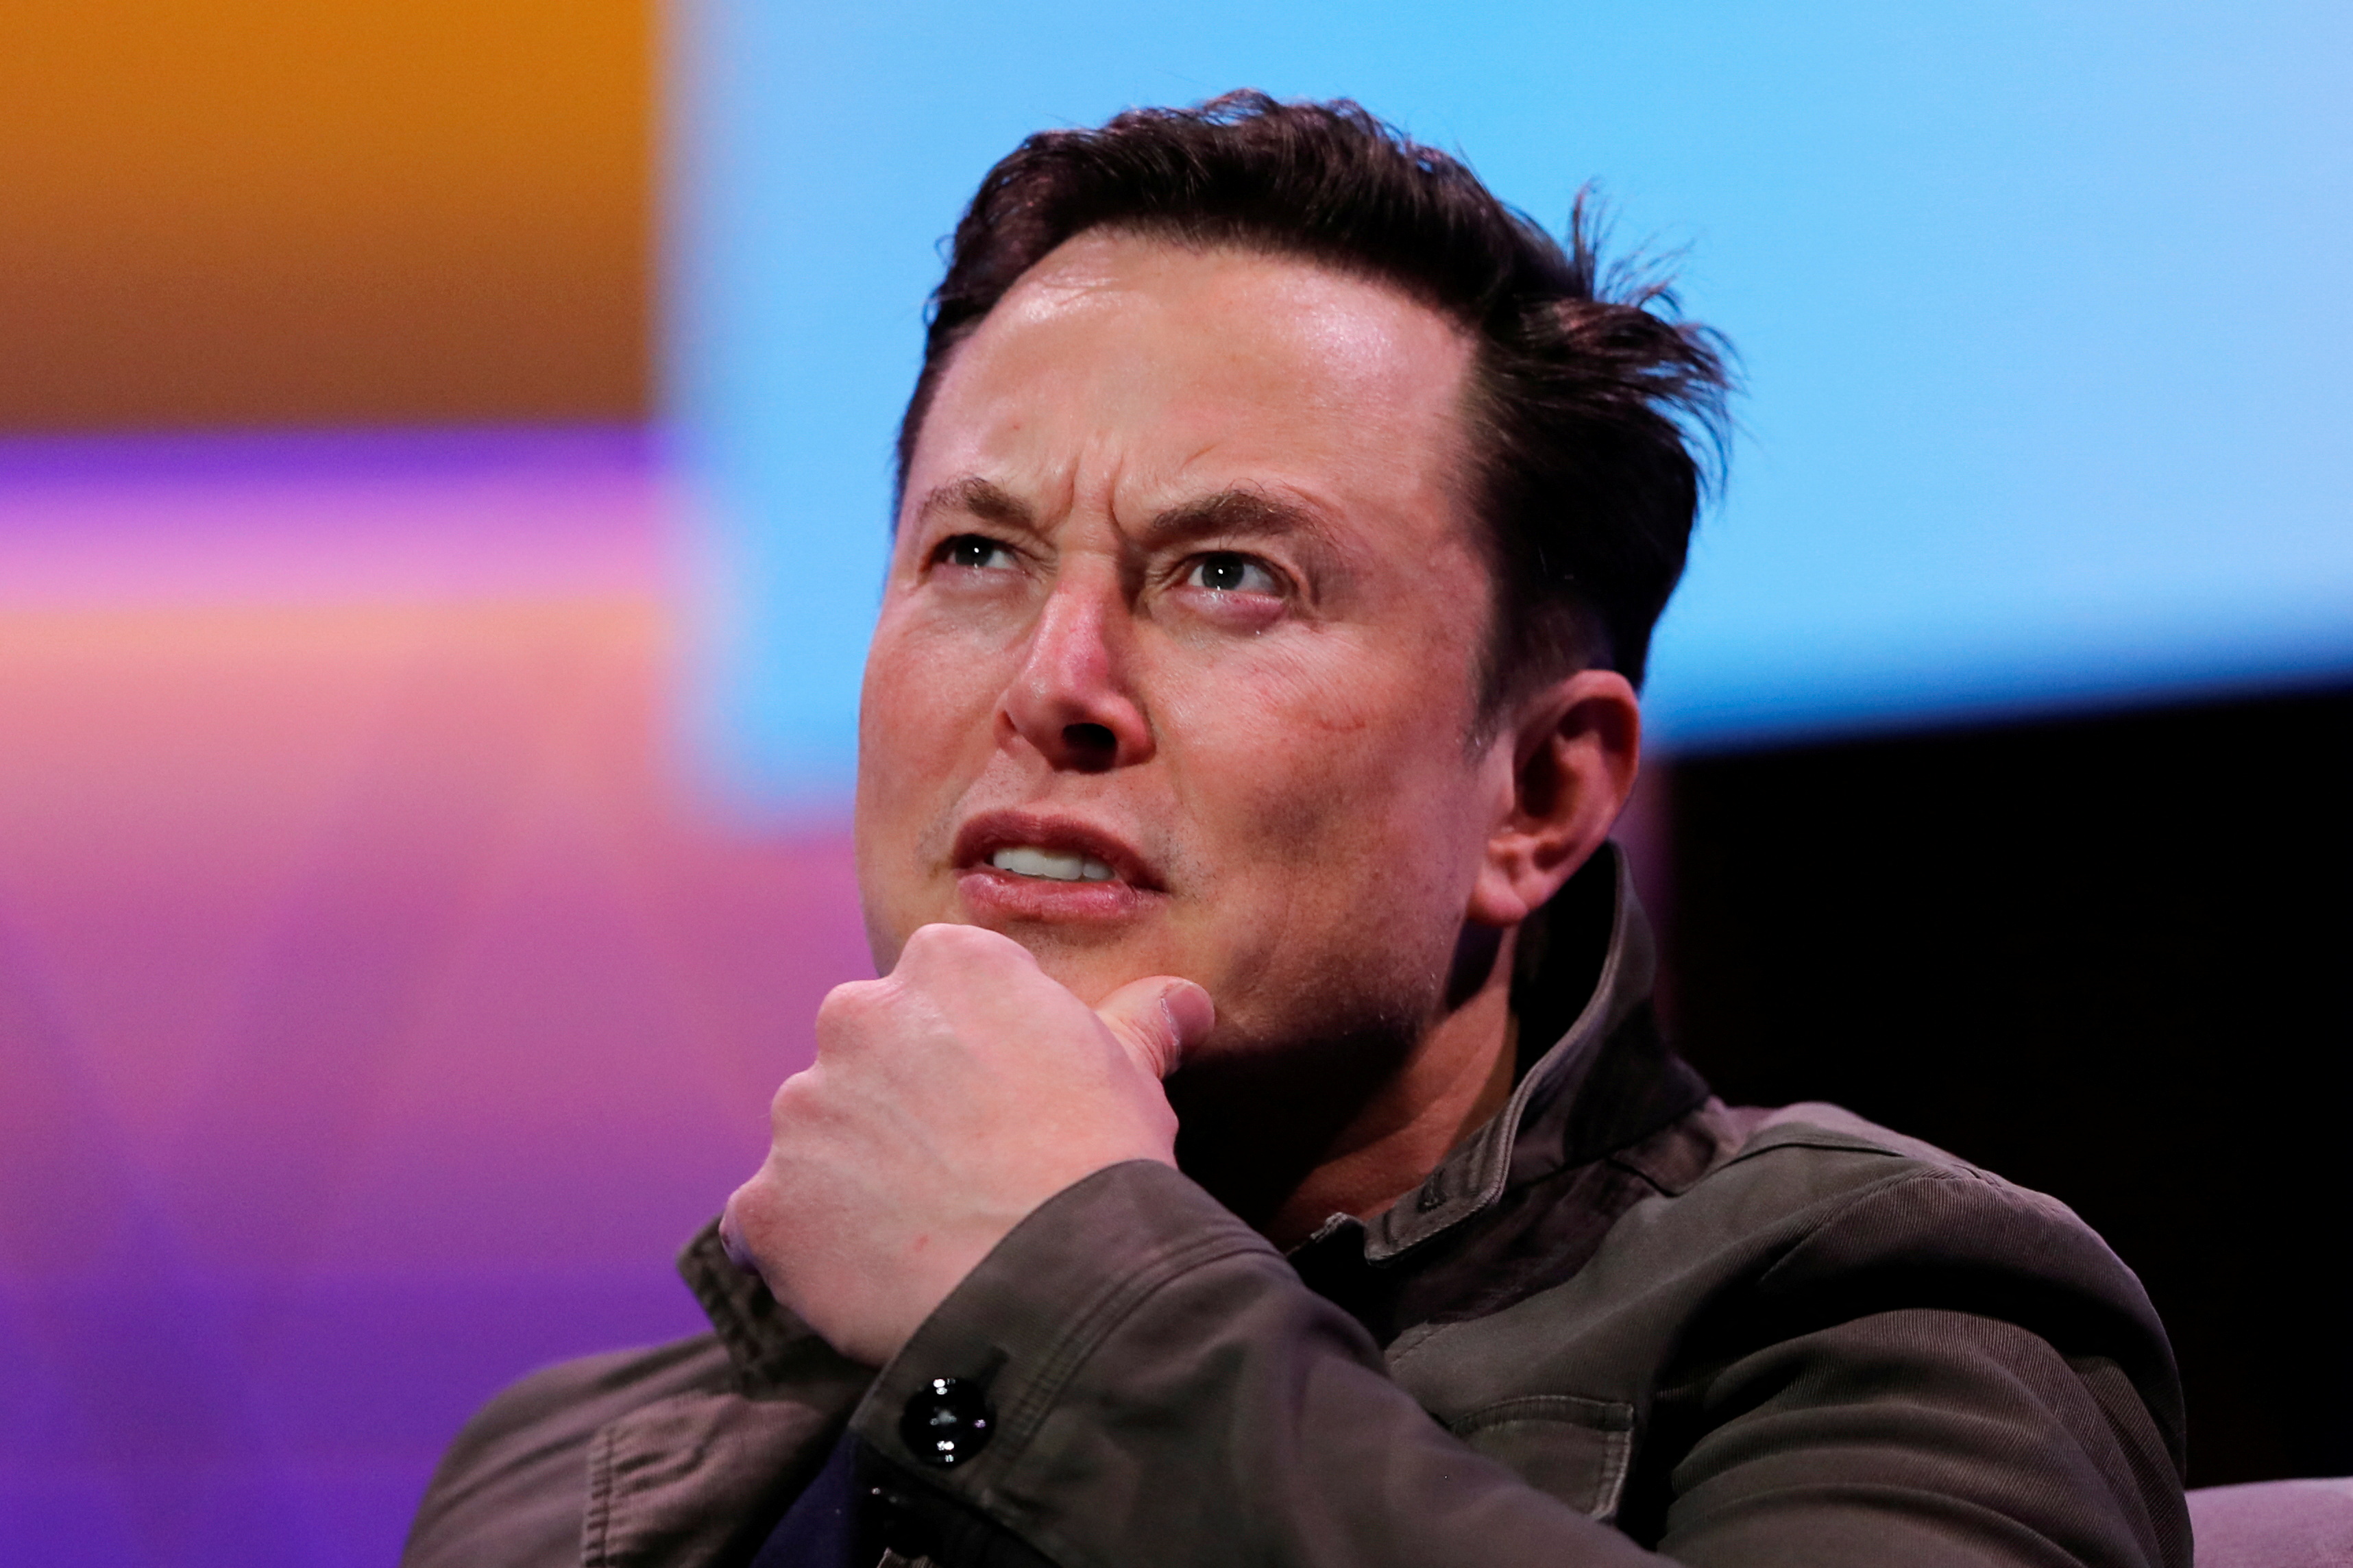 Rachat de Twitter : quelles sont les chances d'Elon Musk de faire baisser le prix ?